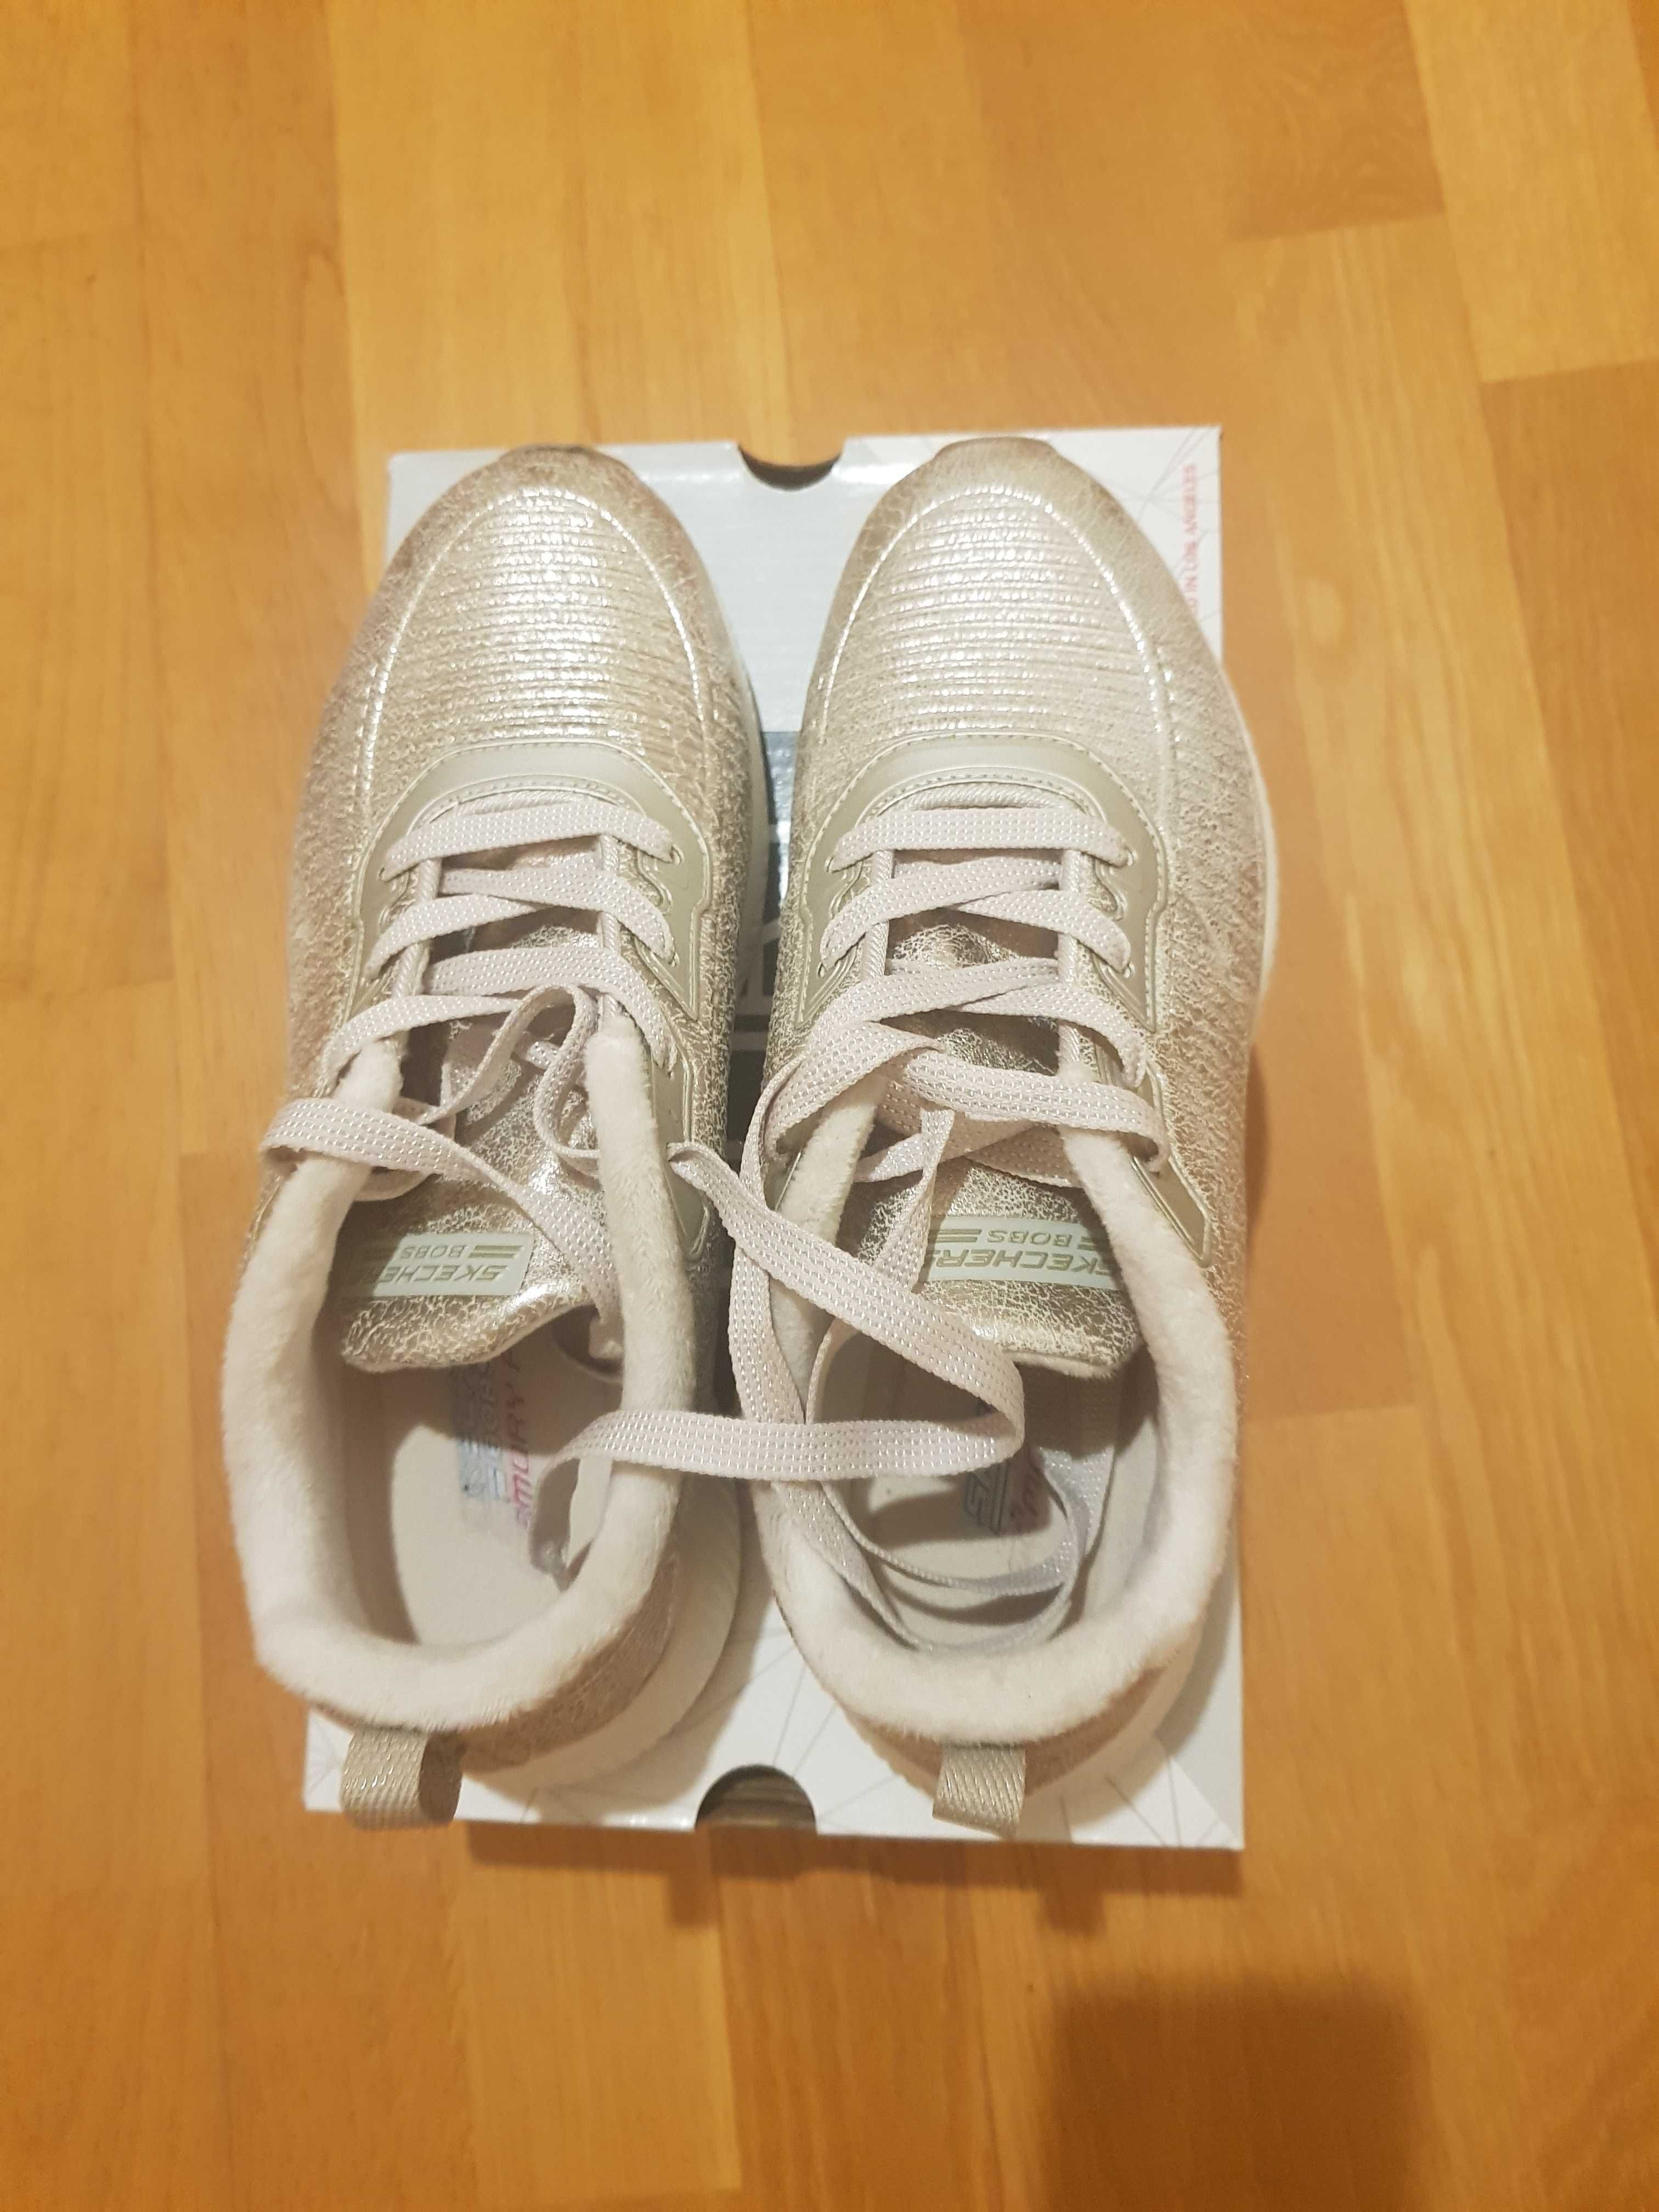 Новые кроссовки Skechers  женские (сникерсы) р.38, цвет серебро